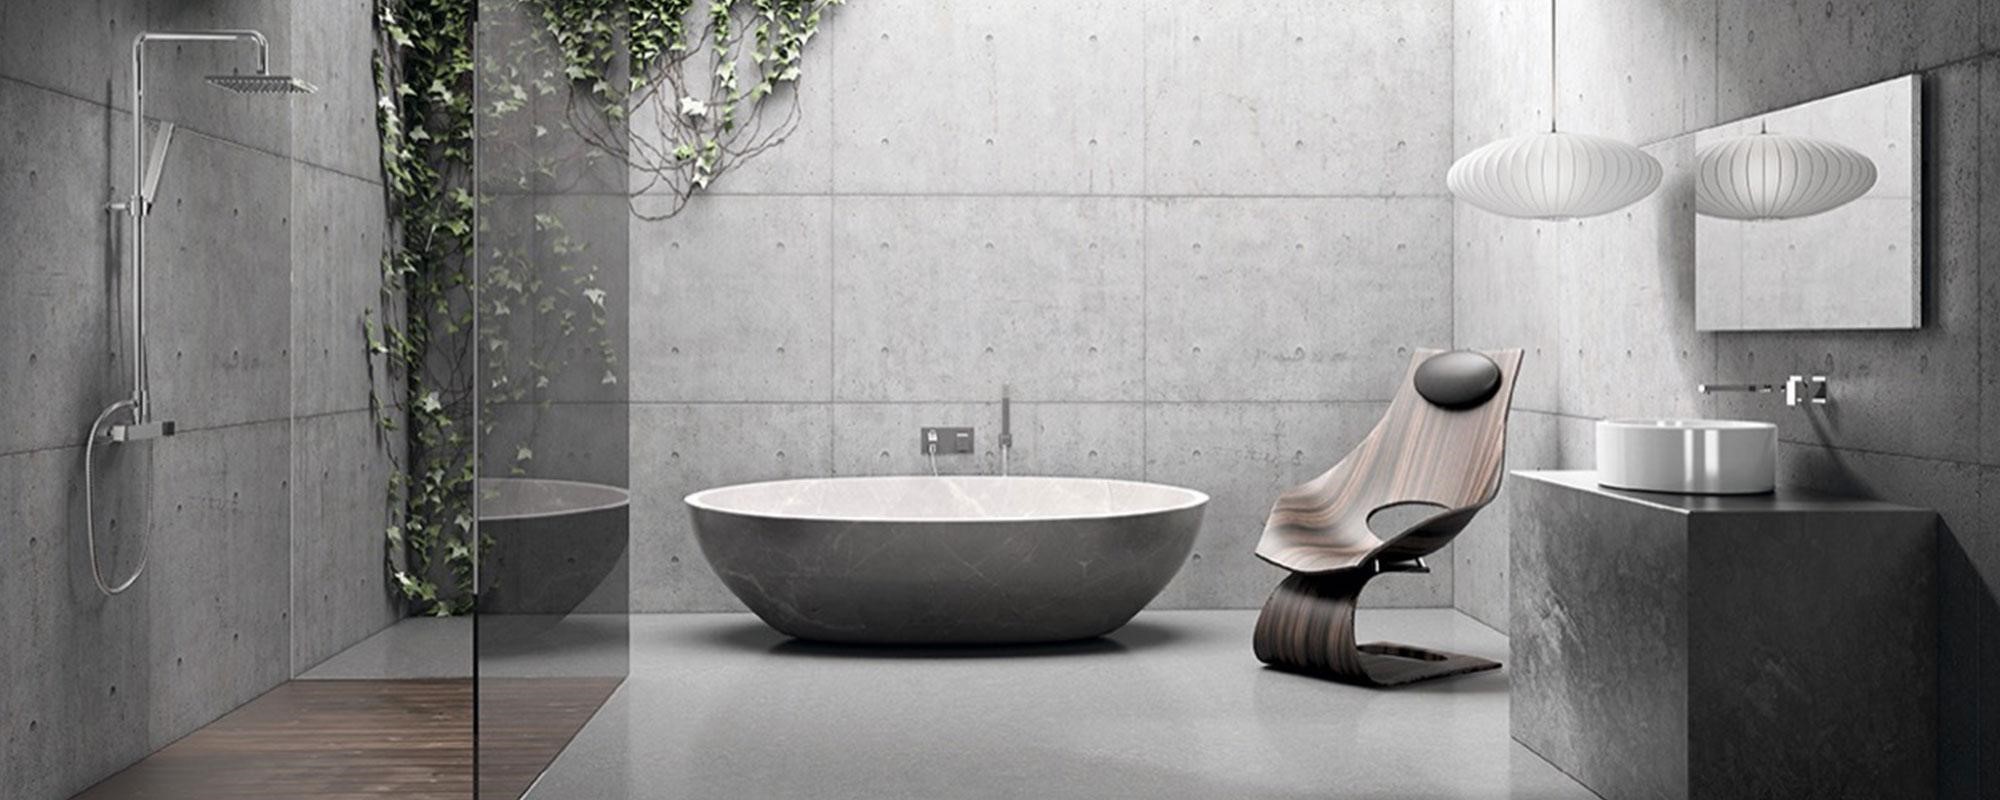 Αριστοκρατικό μπάνιο: 3 είδη υγιεινής που θα αναβαθμίσουν το χώρο σου